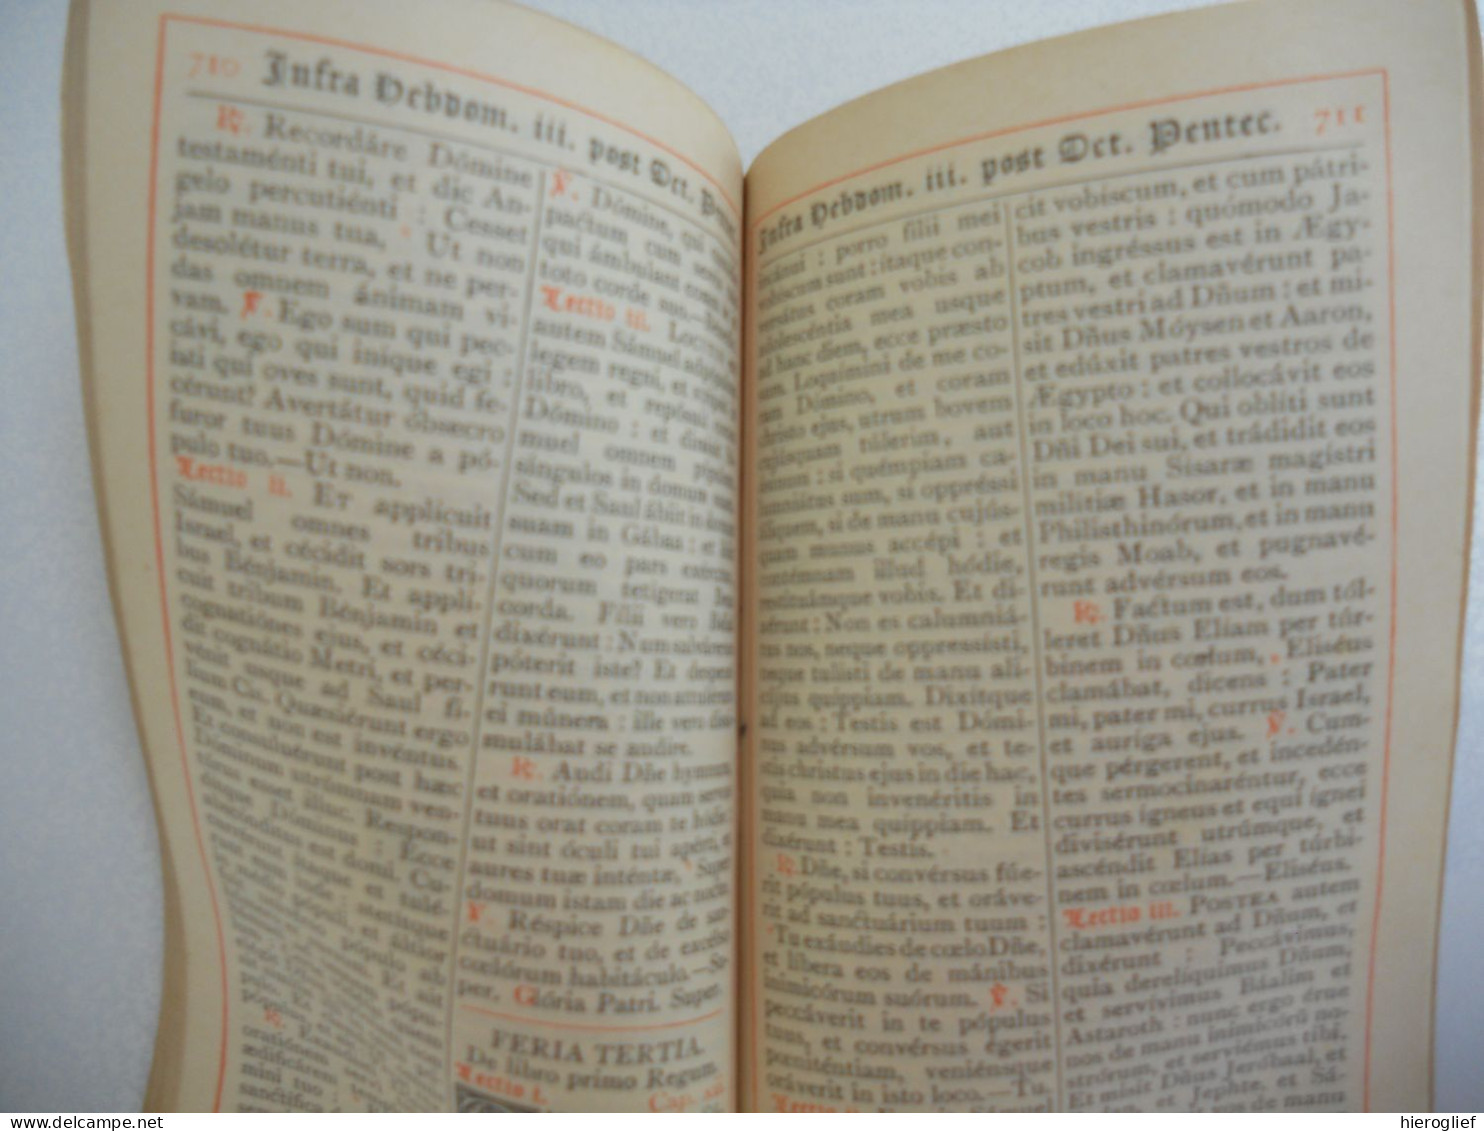 Breviarium Romanum - Proprium De Tempore - A Dominica Trinitati Usque Ad Dûicani VI. Post Pentecosten / Tournai - Old Books